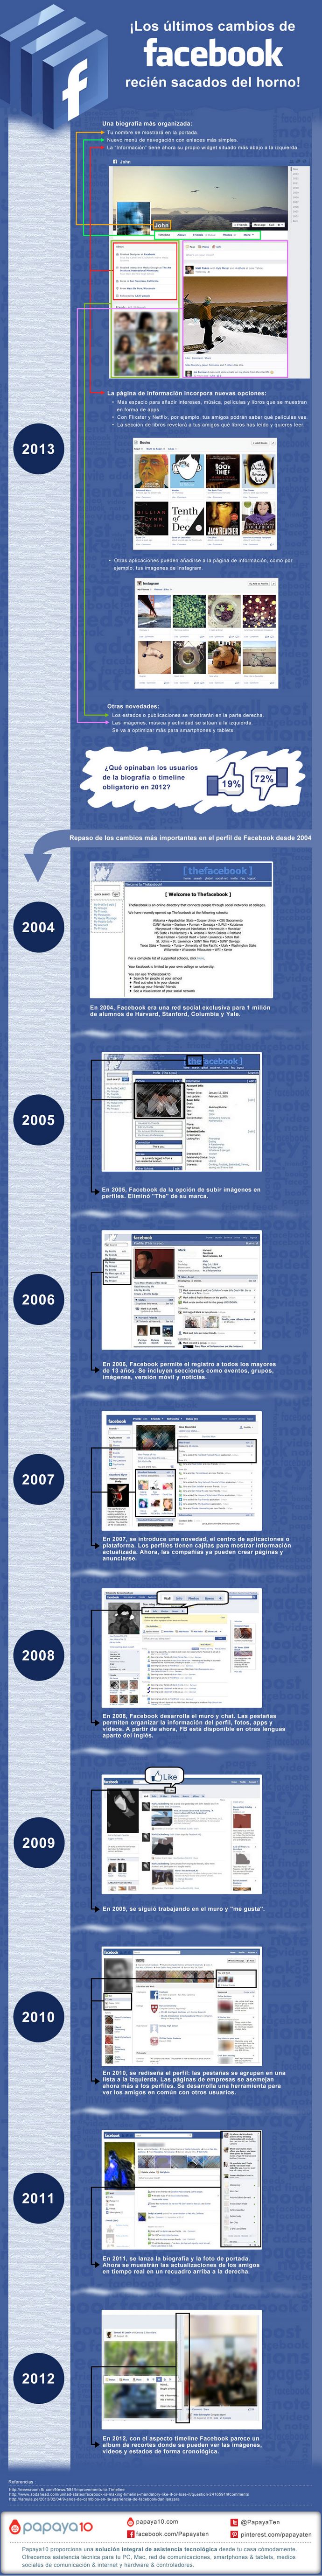 facebook-cambios-2004-2013